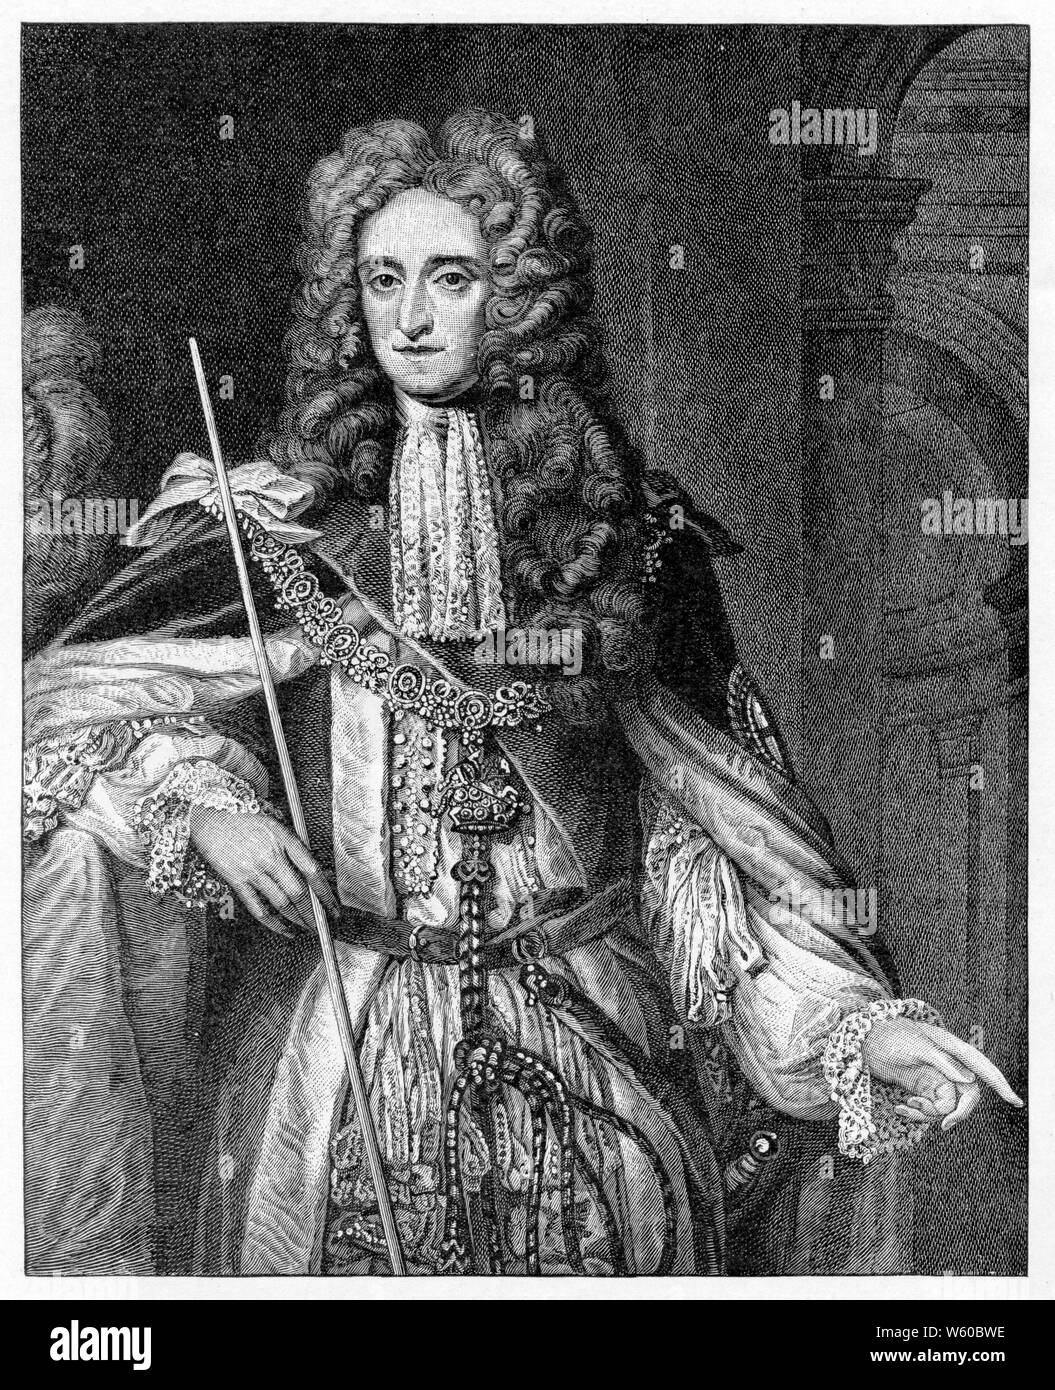 Thomas Osborne, 1 duc de Leeds ('Lord Danby'), XVIIIe siècle. Après Johann Kerseboom (d1708) et Jan van der Vaart (c1650-1727). Thomas Osborne politicien anglais qui faisait partie du groupe Immortal Seven qui a invité William III, Prince of Orange, à déposer James II d'Angleterre comme monarque pendant la glorieuse Révolution. Banque D'Images